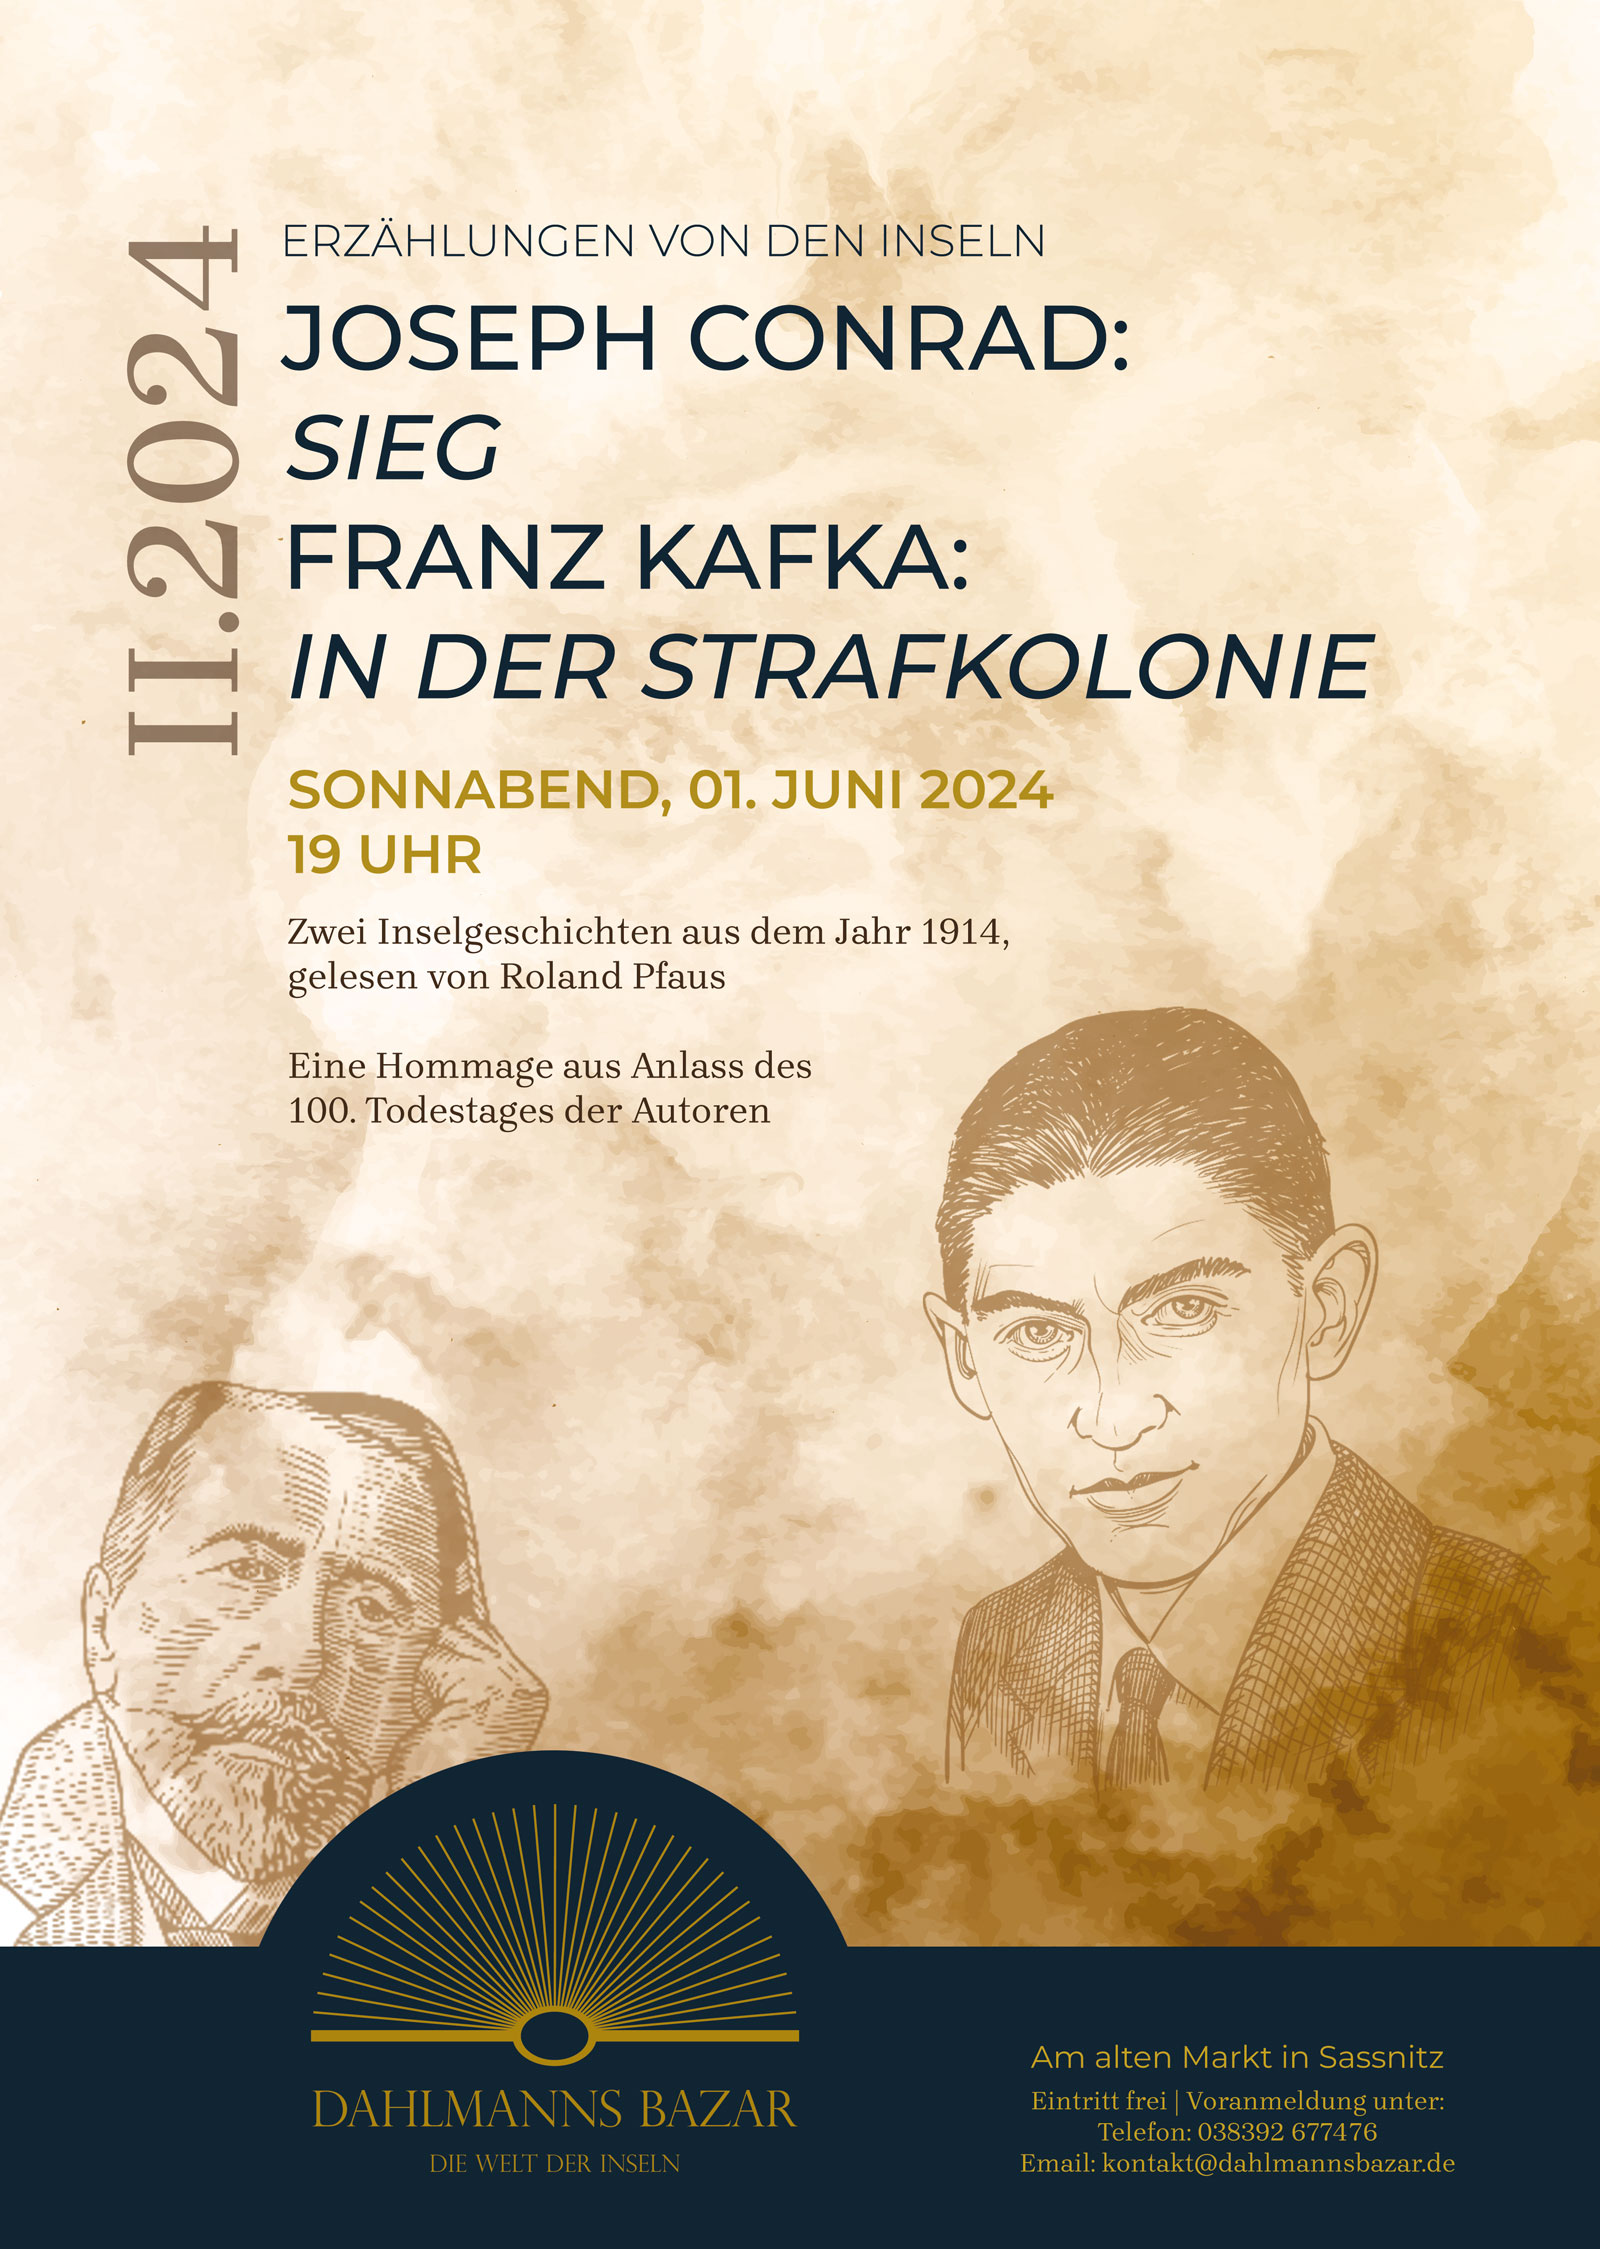 Joseph Conrad: "Sieg" – Franz Kafka: "In der Strafkolonie". Zwei Inselgeschichten aus dem Jahr 1914